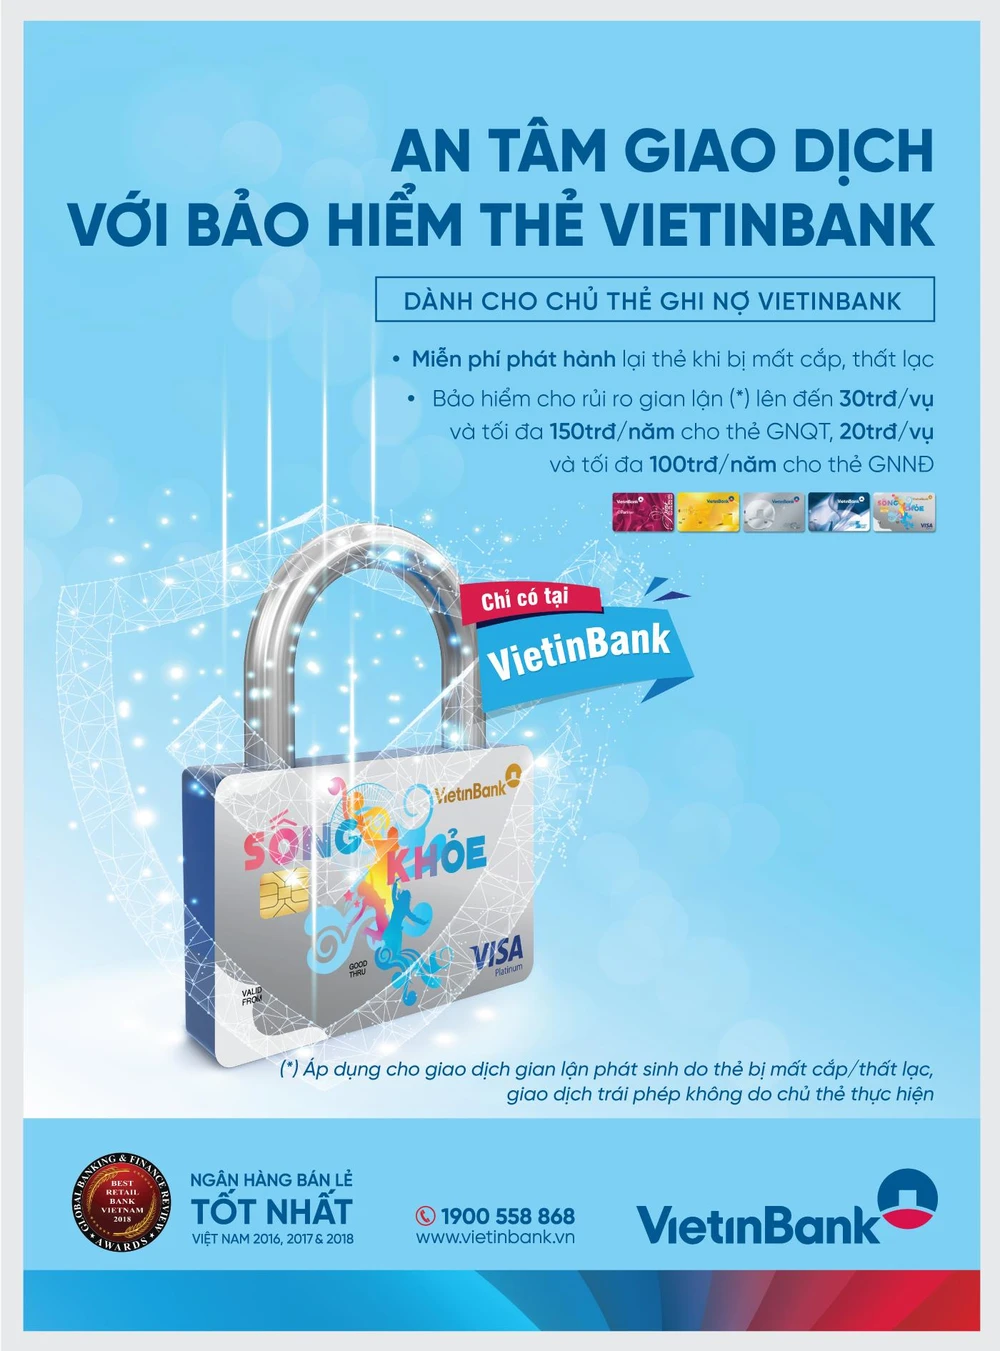 Tính ưu việt của thẻ Ghi nợ cùng dịch vụ Bảo hiểm thẻ VietinBank